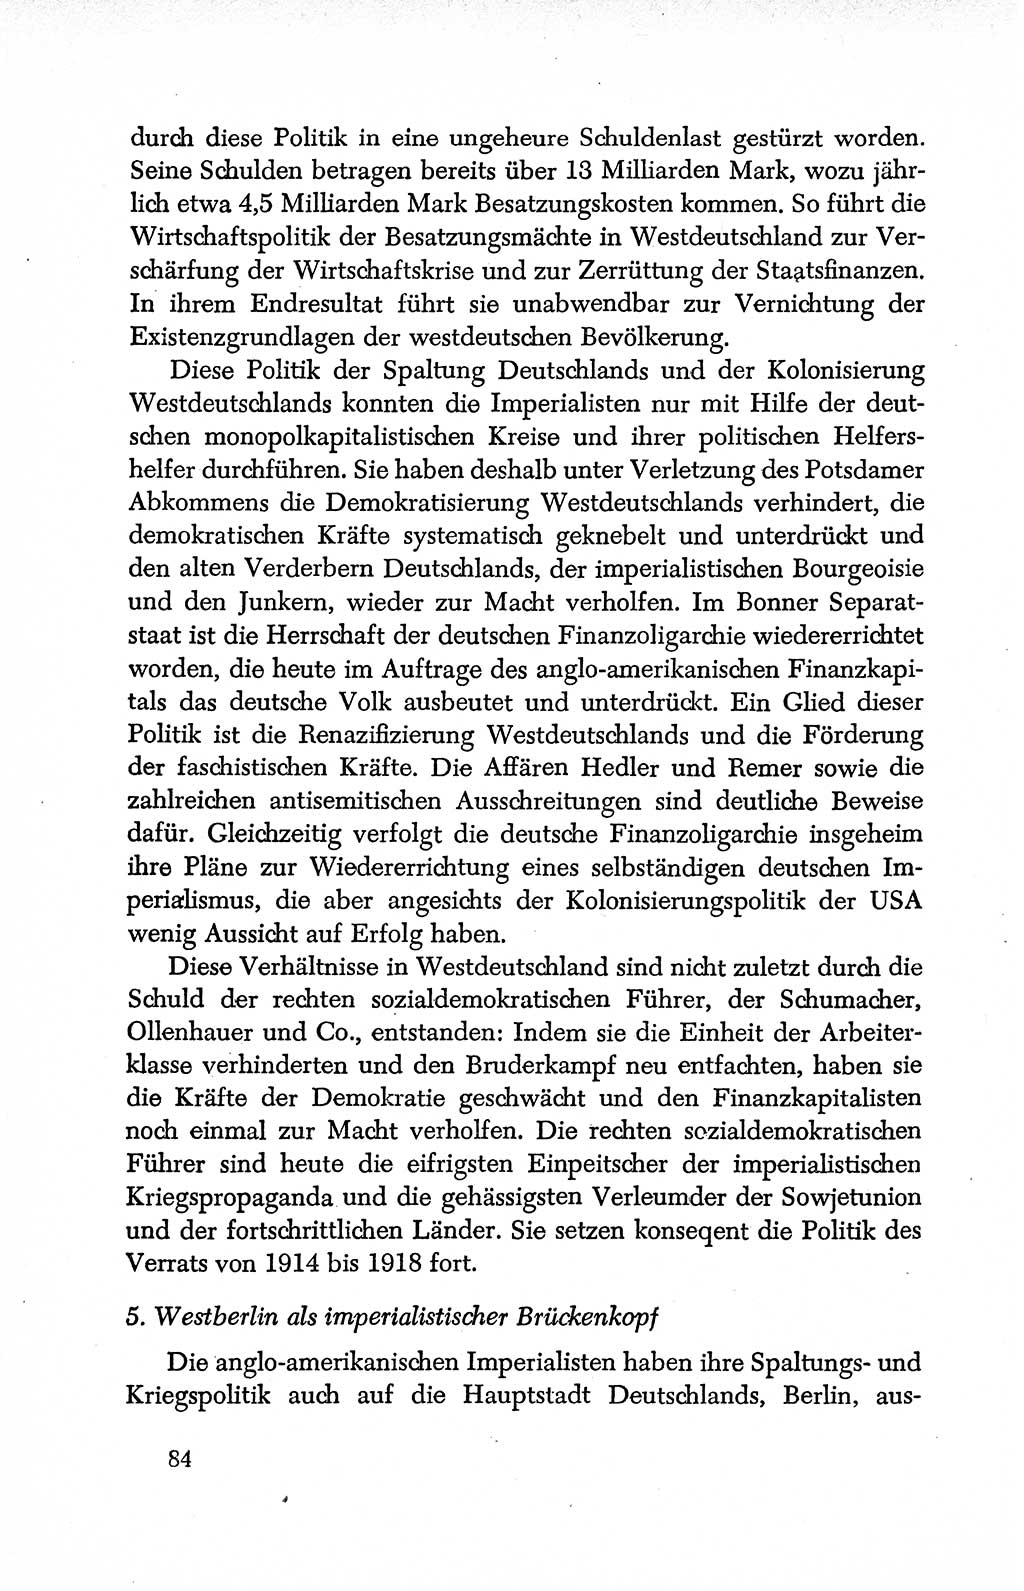 Dokumente der Sozialistischen Einheitspartei Deutschlands (SED) [Deutsche Demokratische Republik (DDR)] 1950-1952, Seite 84 (Dok. SED DDR 1950-1952, S. 84)